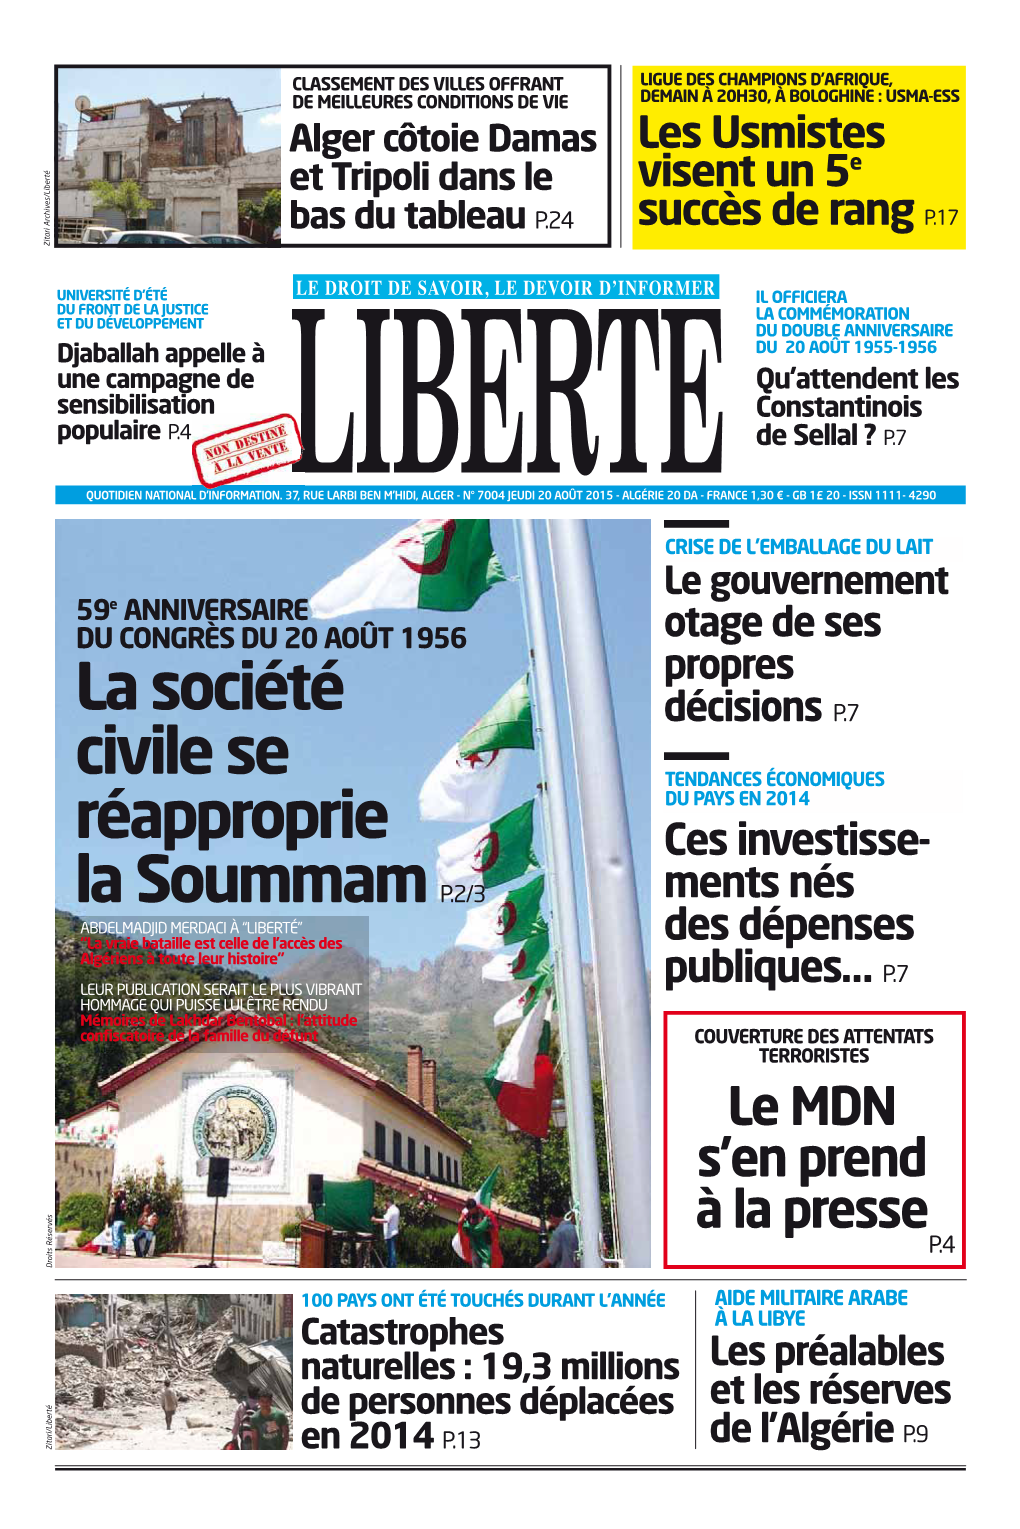 La Société Civile Se Réapproprie La Soummam P.2/3